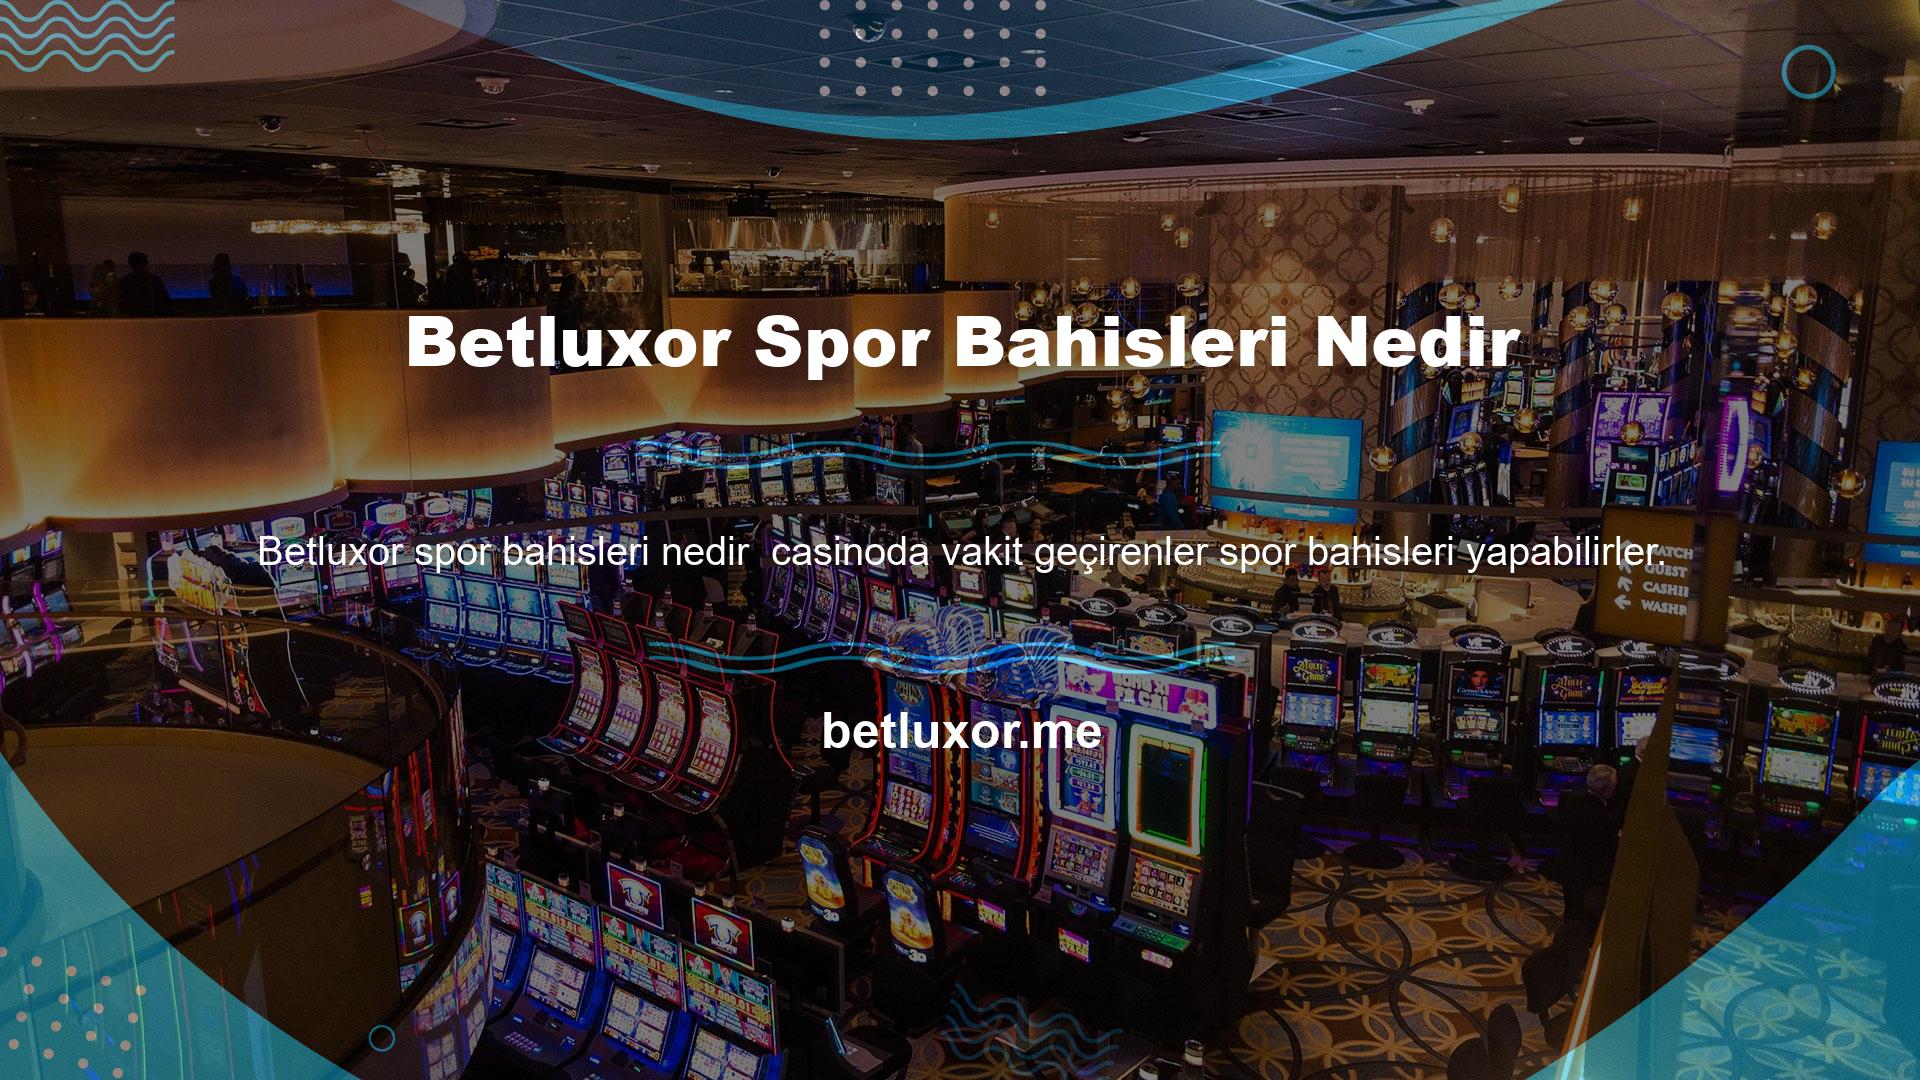 Eğer oynamak istiyorsanız Betluxor ana sayfasında spor bahisleri yapabilirsiniz